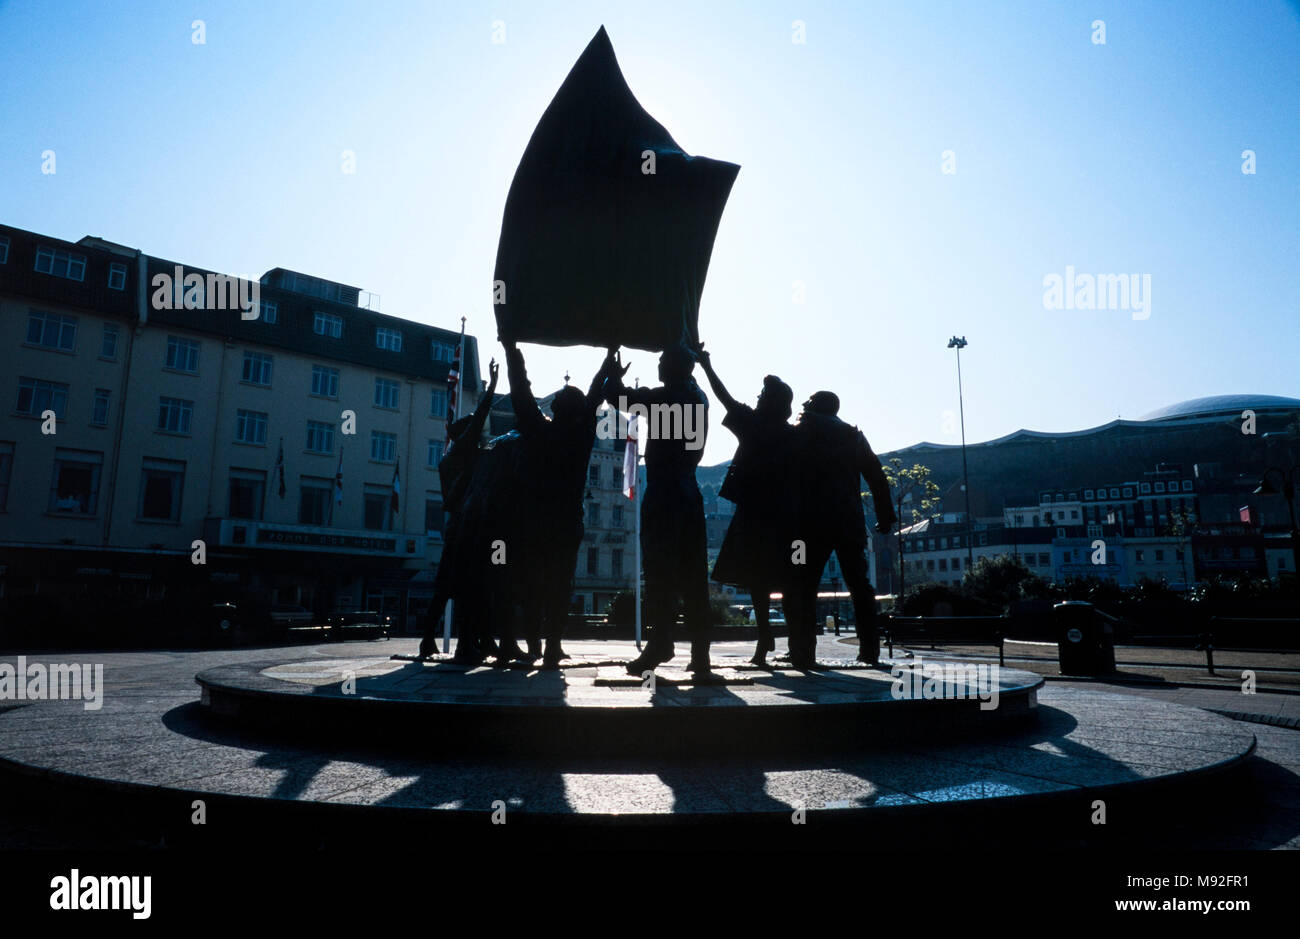 La scultura per commemorare i 50 anni dalla liberazione di Jersey dopo la seconda guerra mondiale, da Philip Jackson, è stata svelata dal Principe di Galles il 9 maggio 1995, archiviazione di fotografia, 2003, Isole del Canale Foto Stock